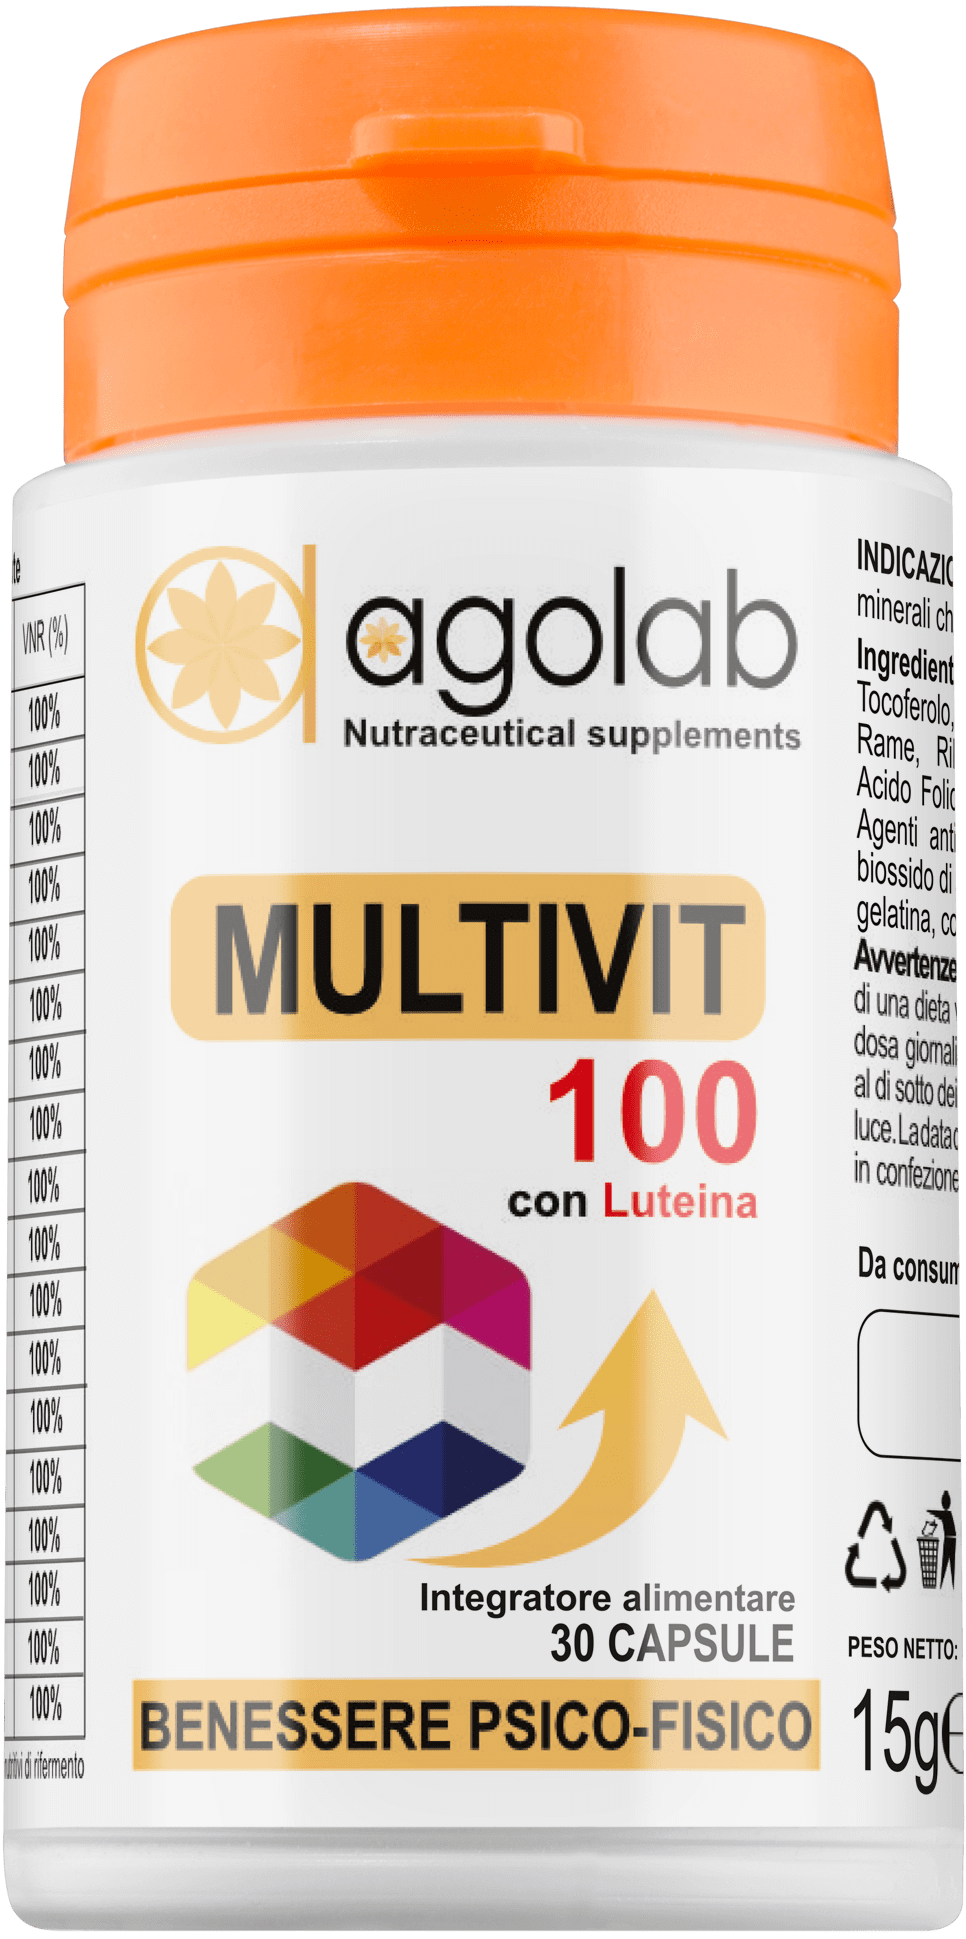 Multivit 100 multivitaminico sali minerali migliore agolab nutraceutica 